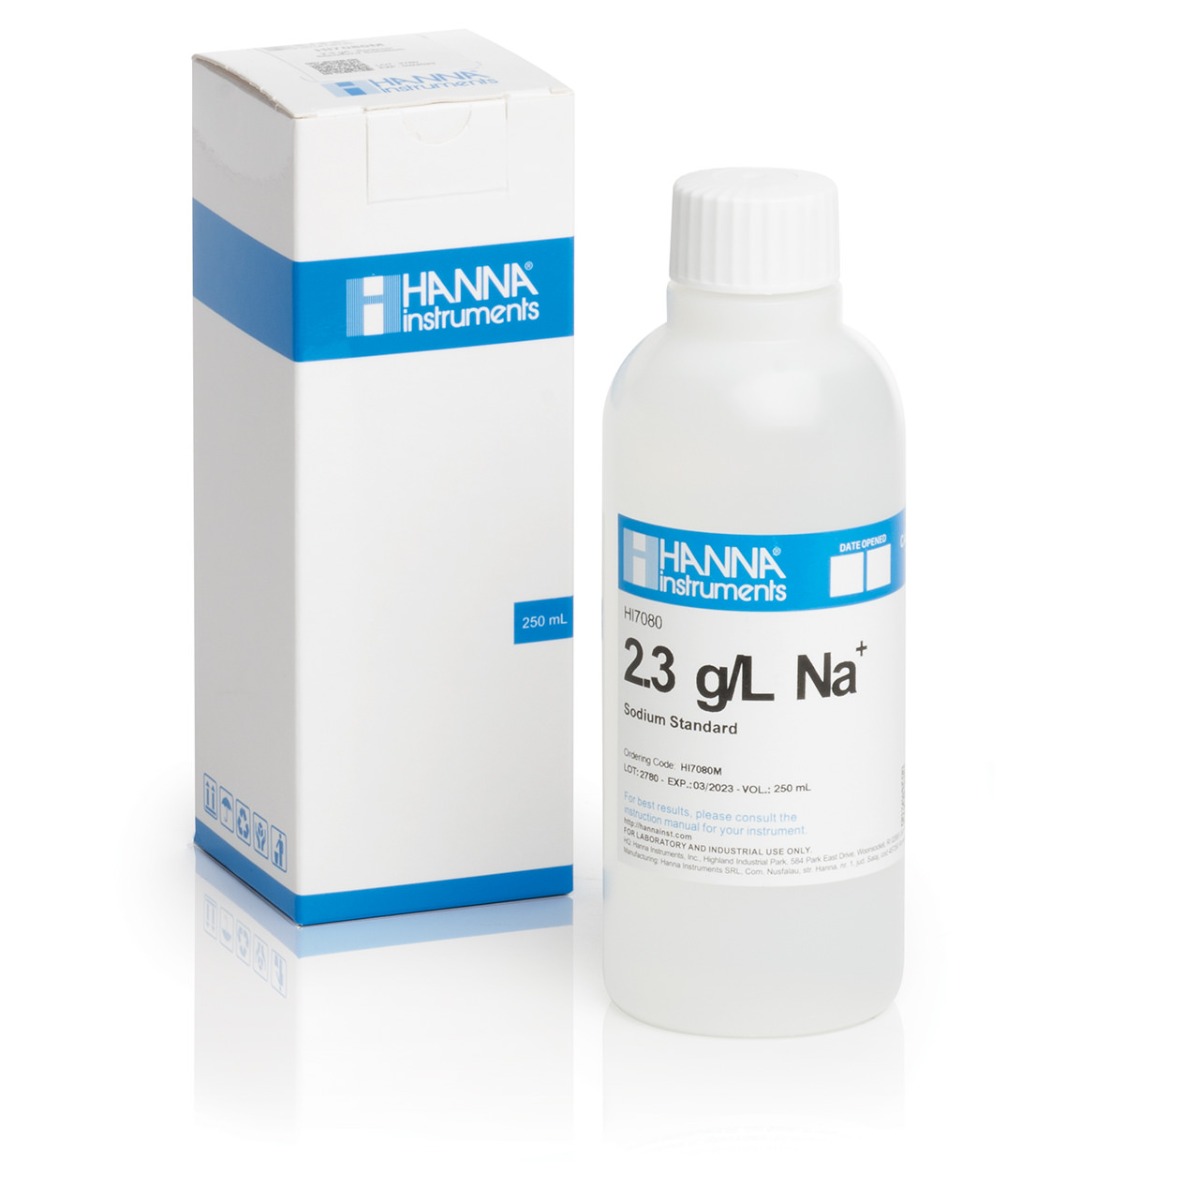 HI7080M 2.3 g/L Na+ Standard Solution (230 mL Bottle)